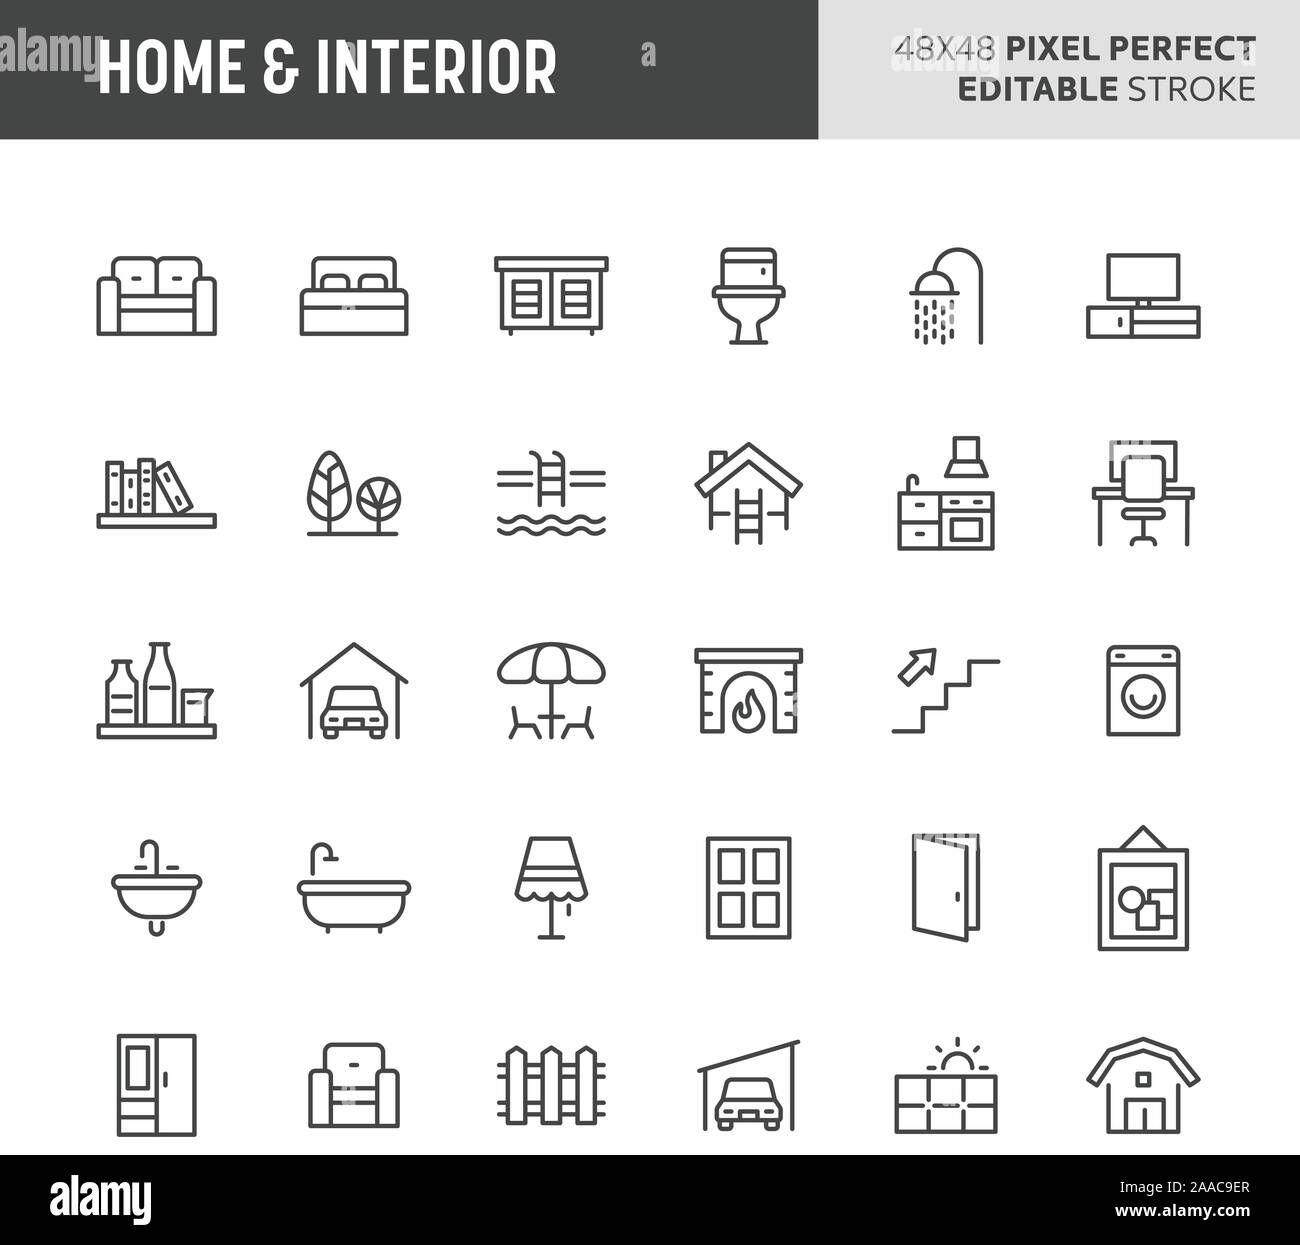 30 linea sottile icone associate con home & interior. Simboli come arredamento domestico, tipi di camera e gli elettrodomestici sono inclusi in questo set. 48x48 Illustrazione Vettoriale